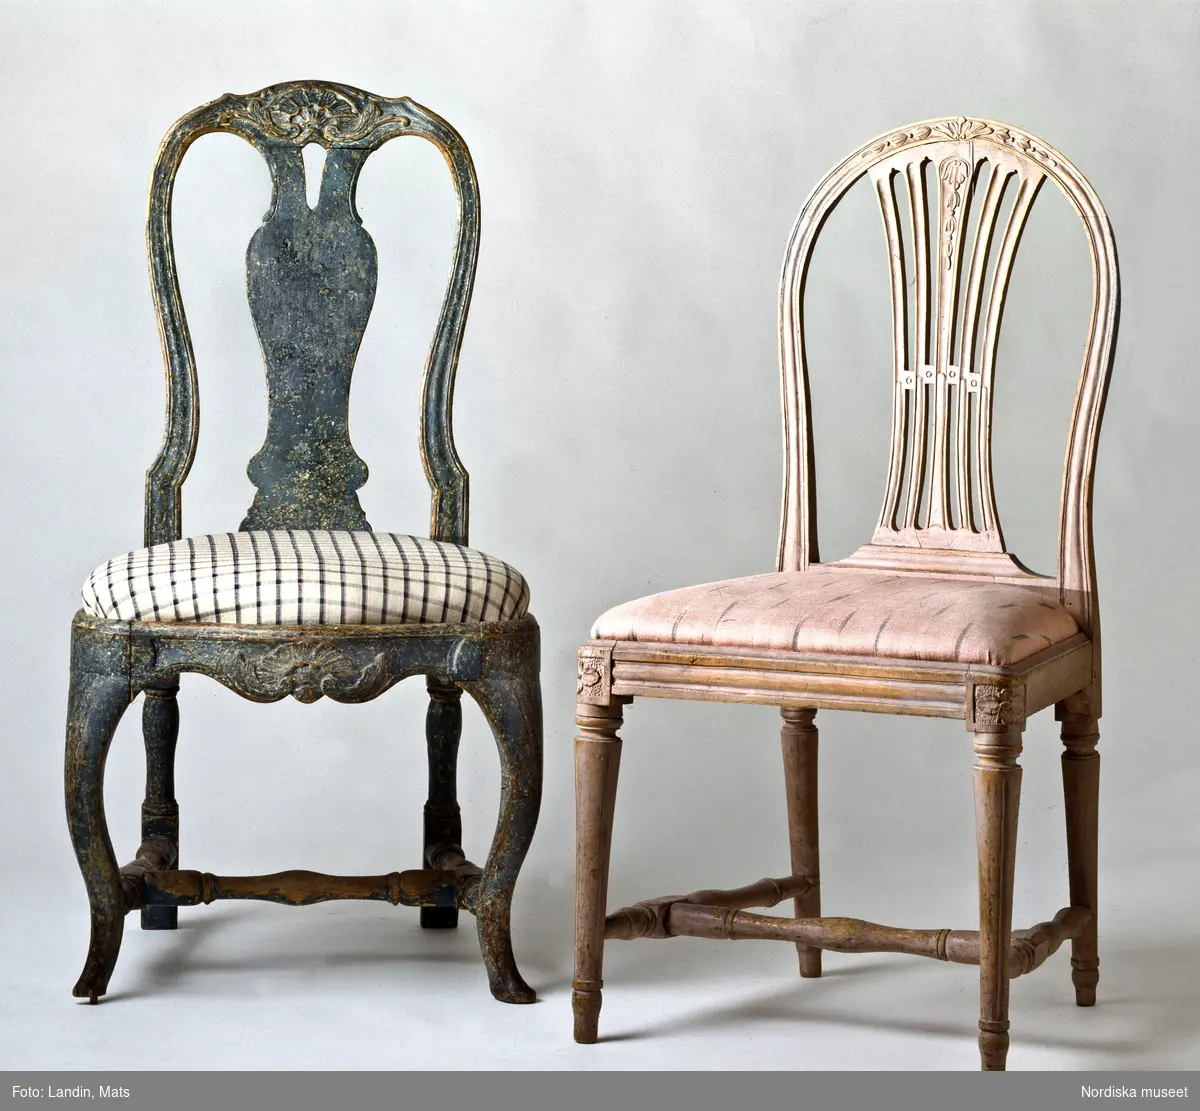 Två 1700-talsstolar. Till vänster den svenska rokokons elegantaste matsalsstol av engelsk typ, men med skulpterad dekor hämtad från den franska rokokon. Stolstypen har ofta kallats bondrokoko, en term som skapats inom antikhandeln. Den högra en stram sengustaviansk modell som influerats ev engelska stolar.